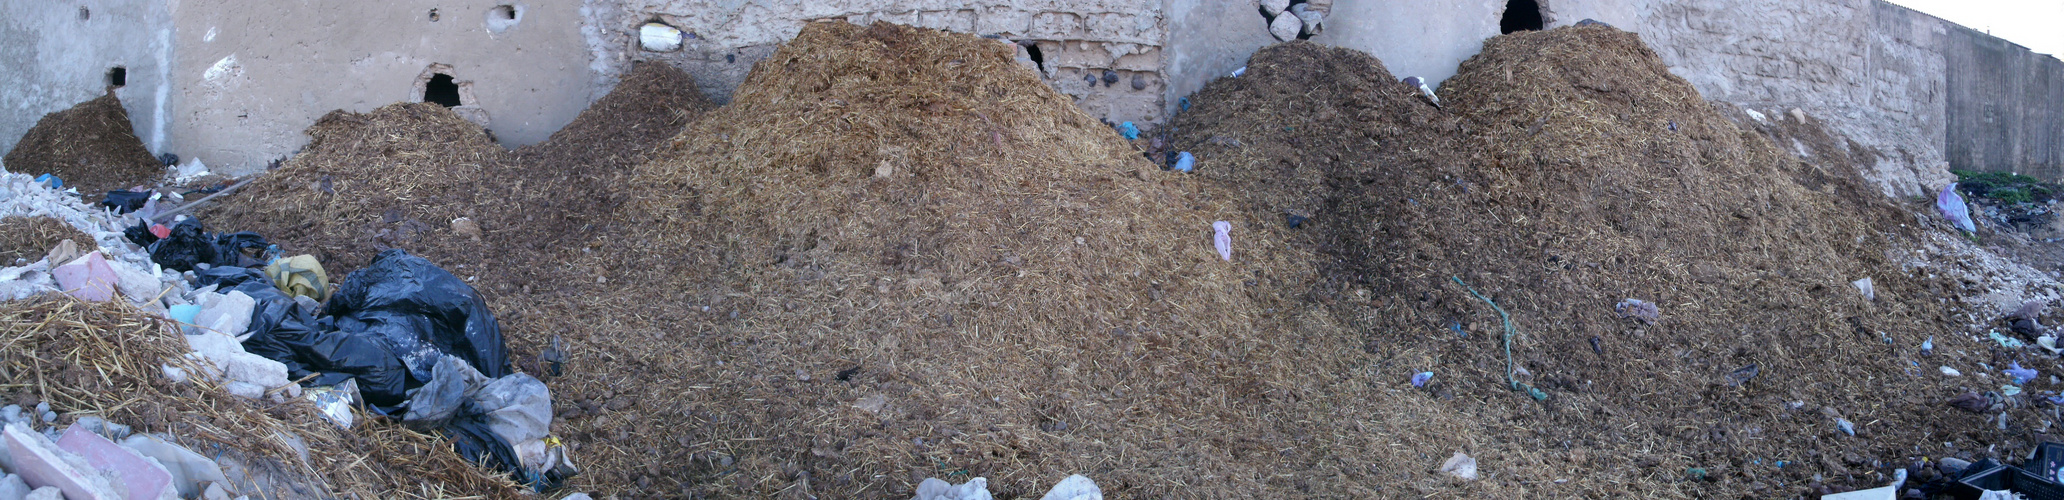 Müllentsorgung auf marokkanisch 2te